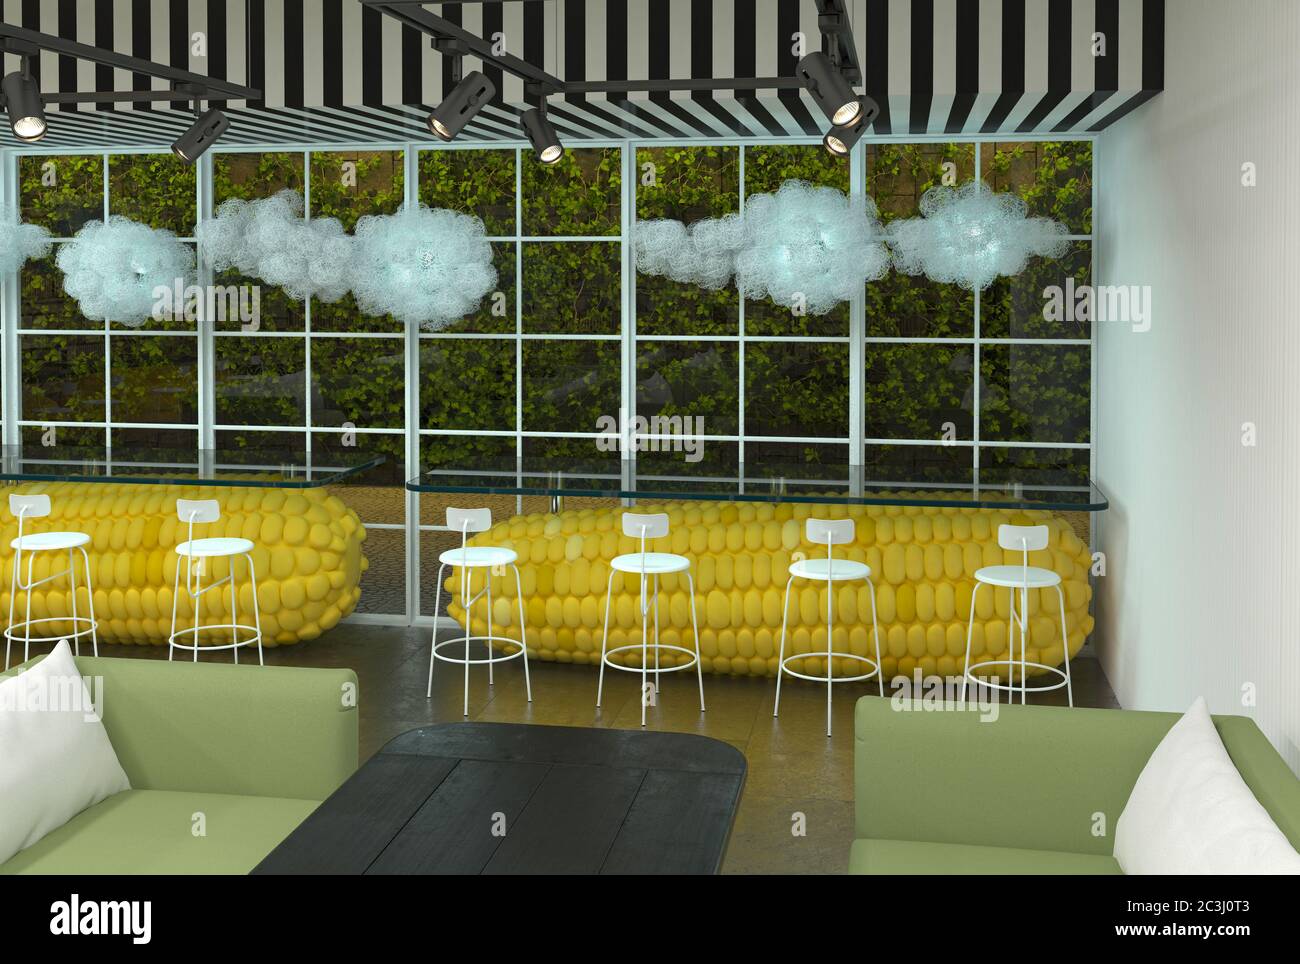 Das Innere des Restaurants, Cafés oder Food Court Halle mit riesigen Maiskolben statt Tische. Moderne kreative unerwartete Inneneinrichtung. 3D-Renderin Stockfoto